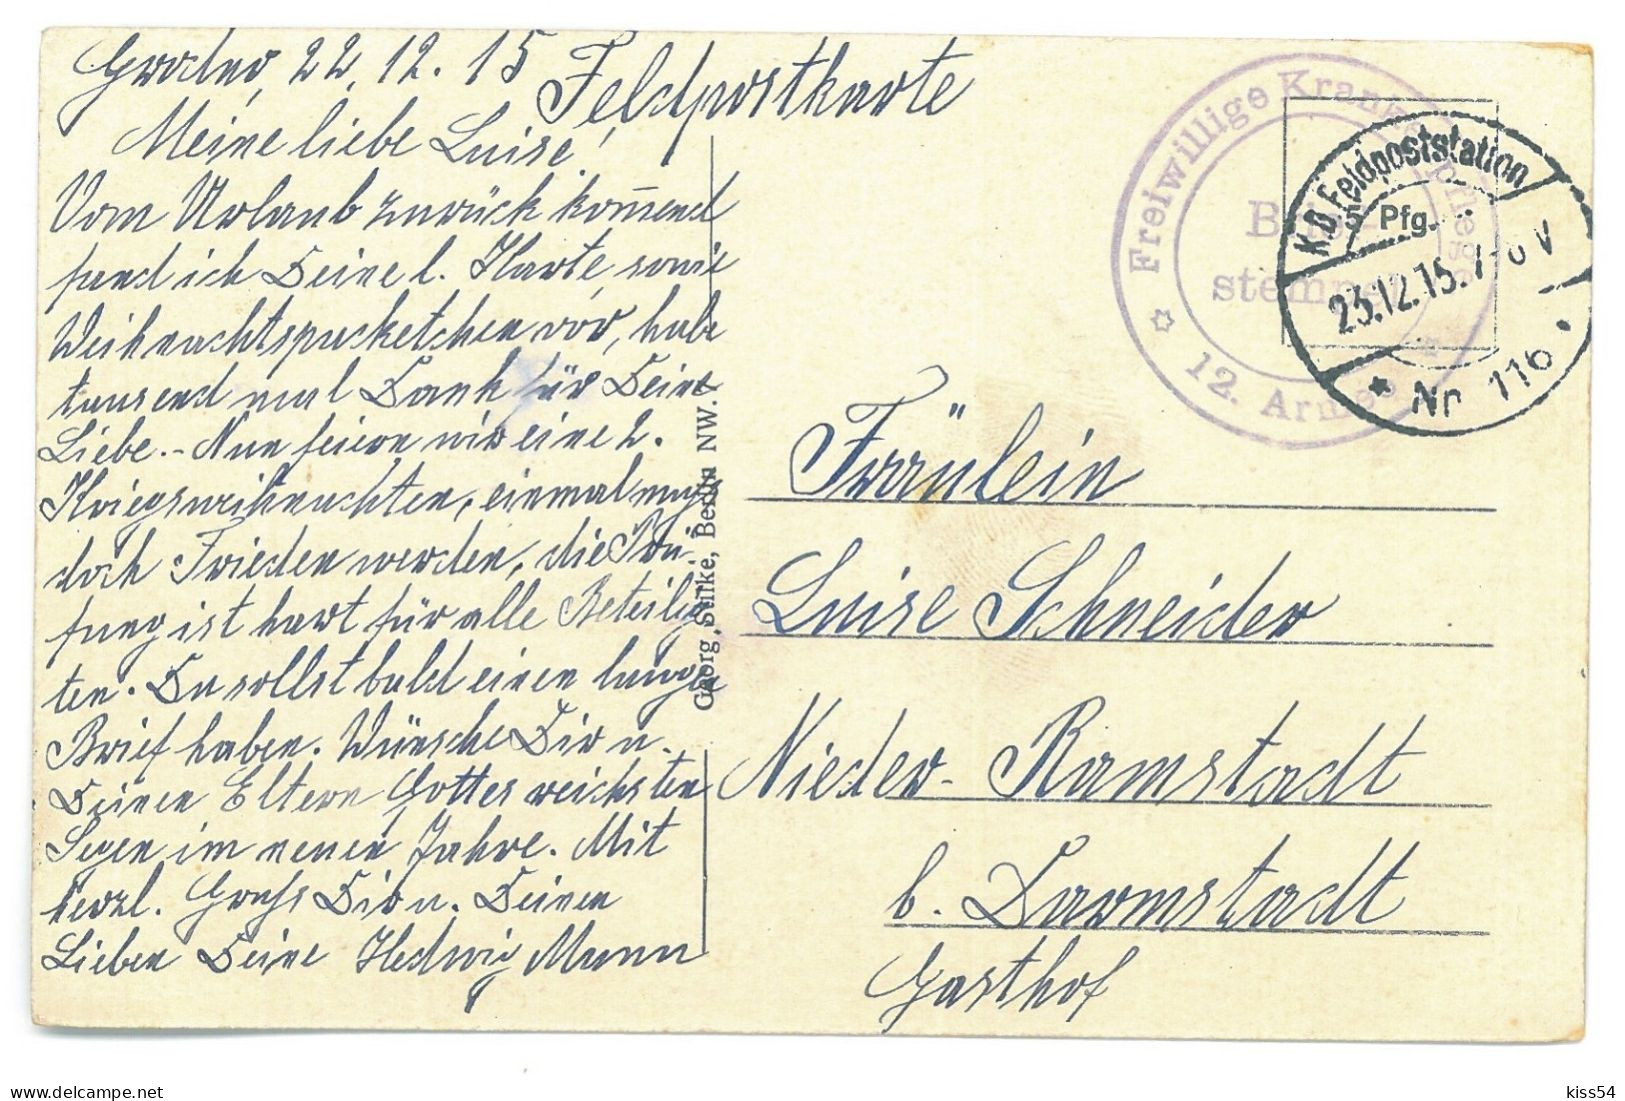 BL 39 - 25388 GRODNO, Cathedral, Belarus - Old Postcard, CENSOR - Used - 1915 - Belarus